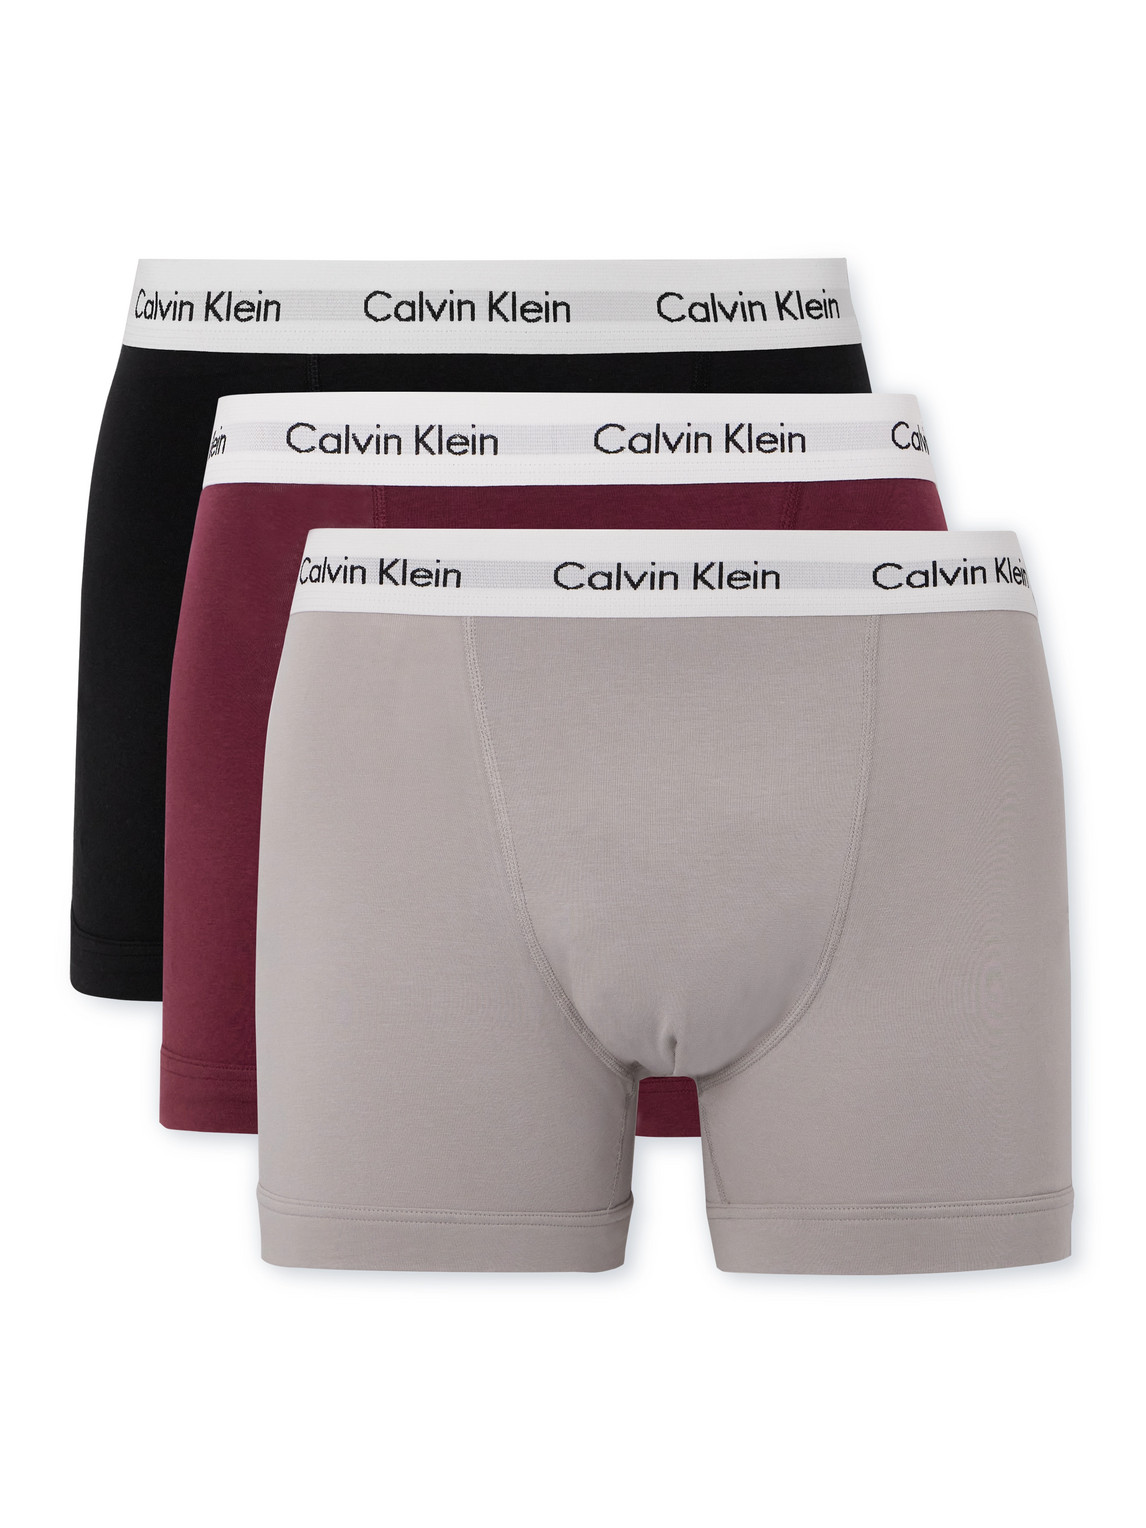 Calvin Klein Underwear Boxer Briefs Set - Black for Men